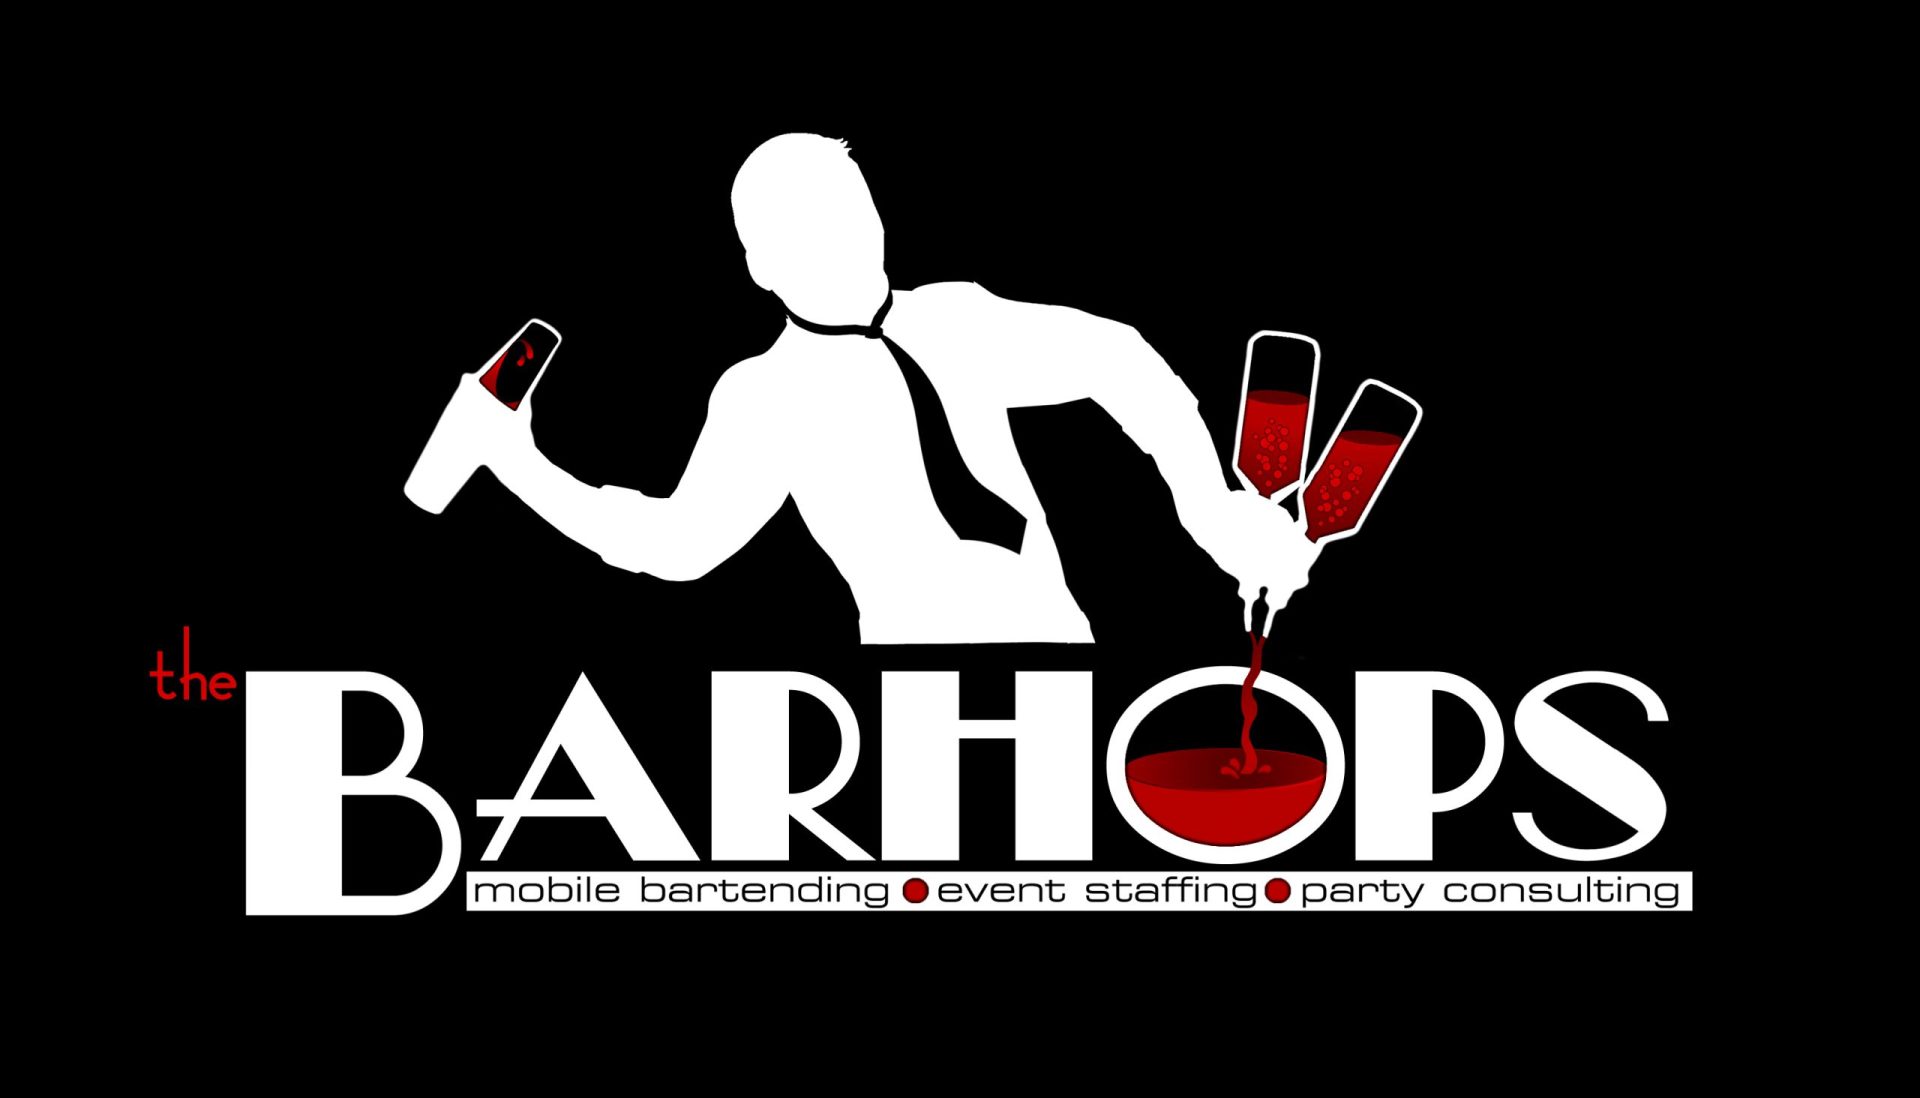 bartender logo ideas 2